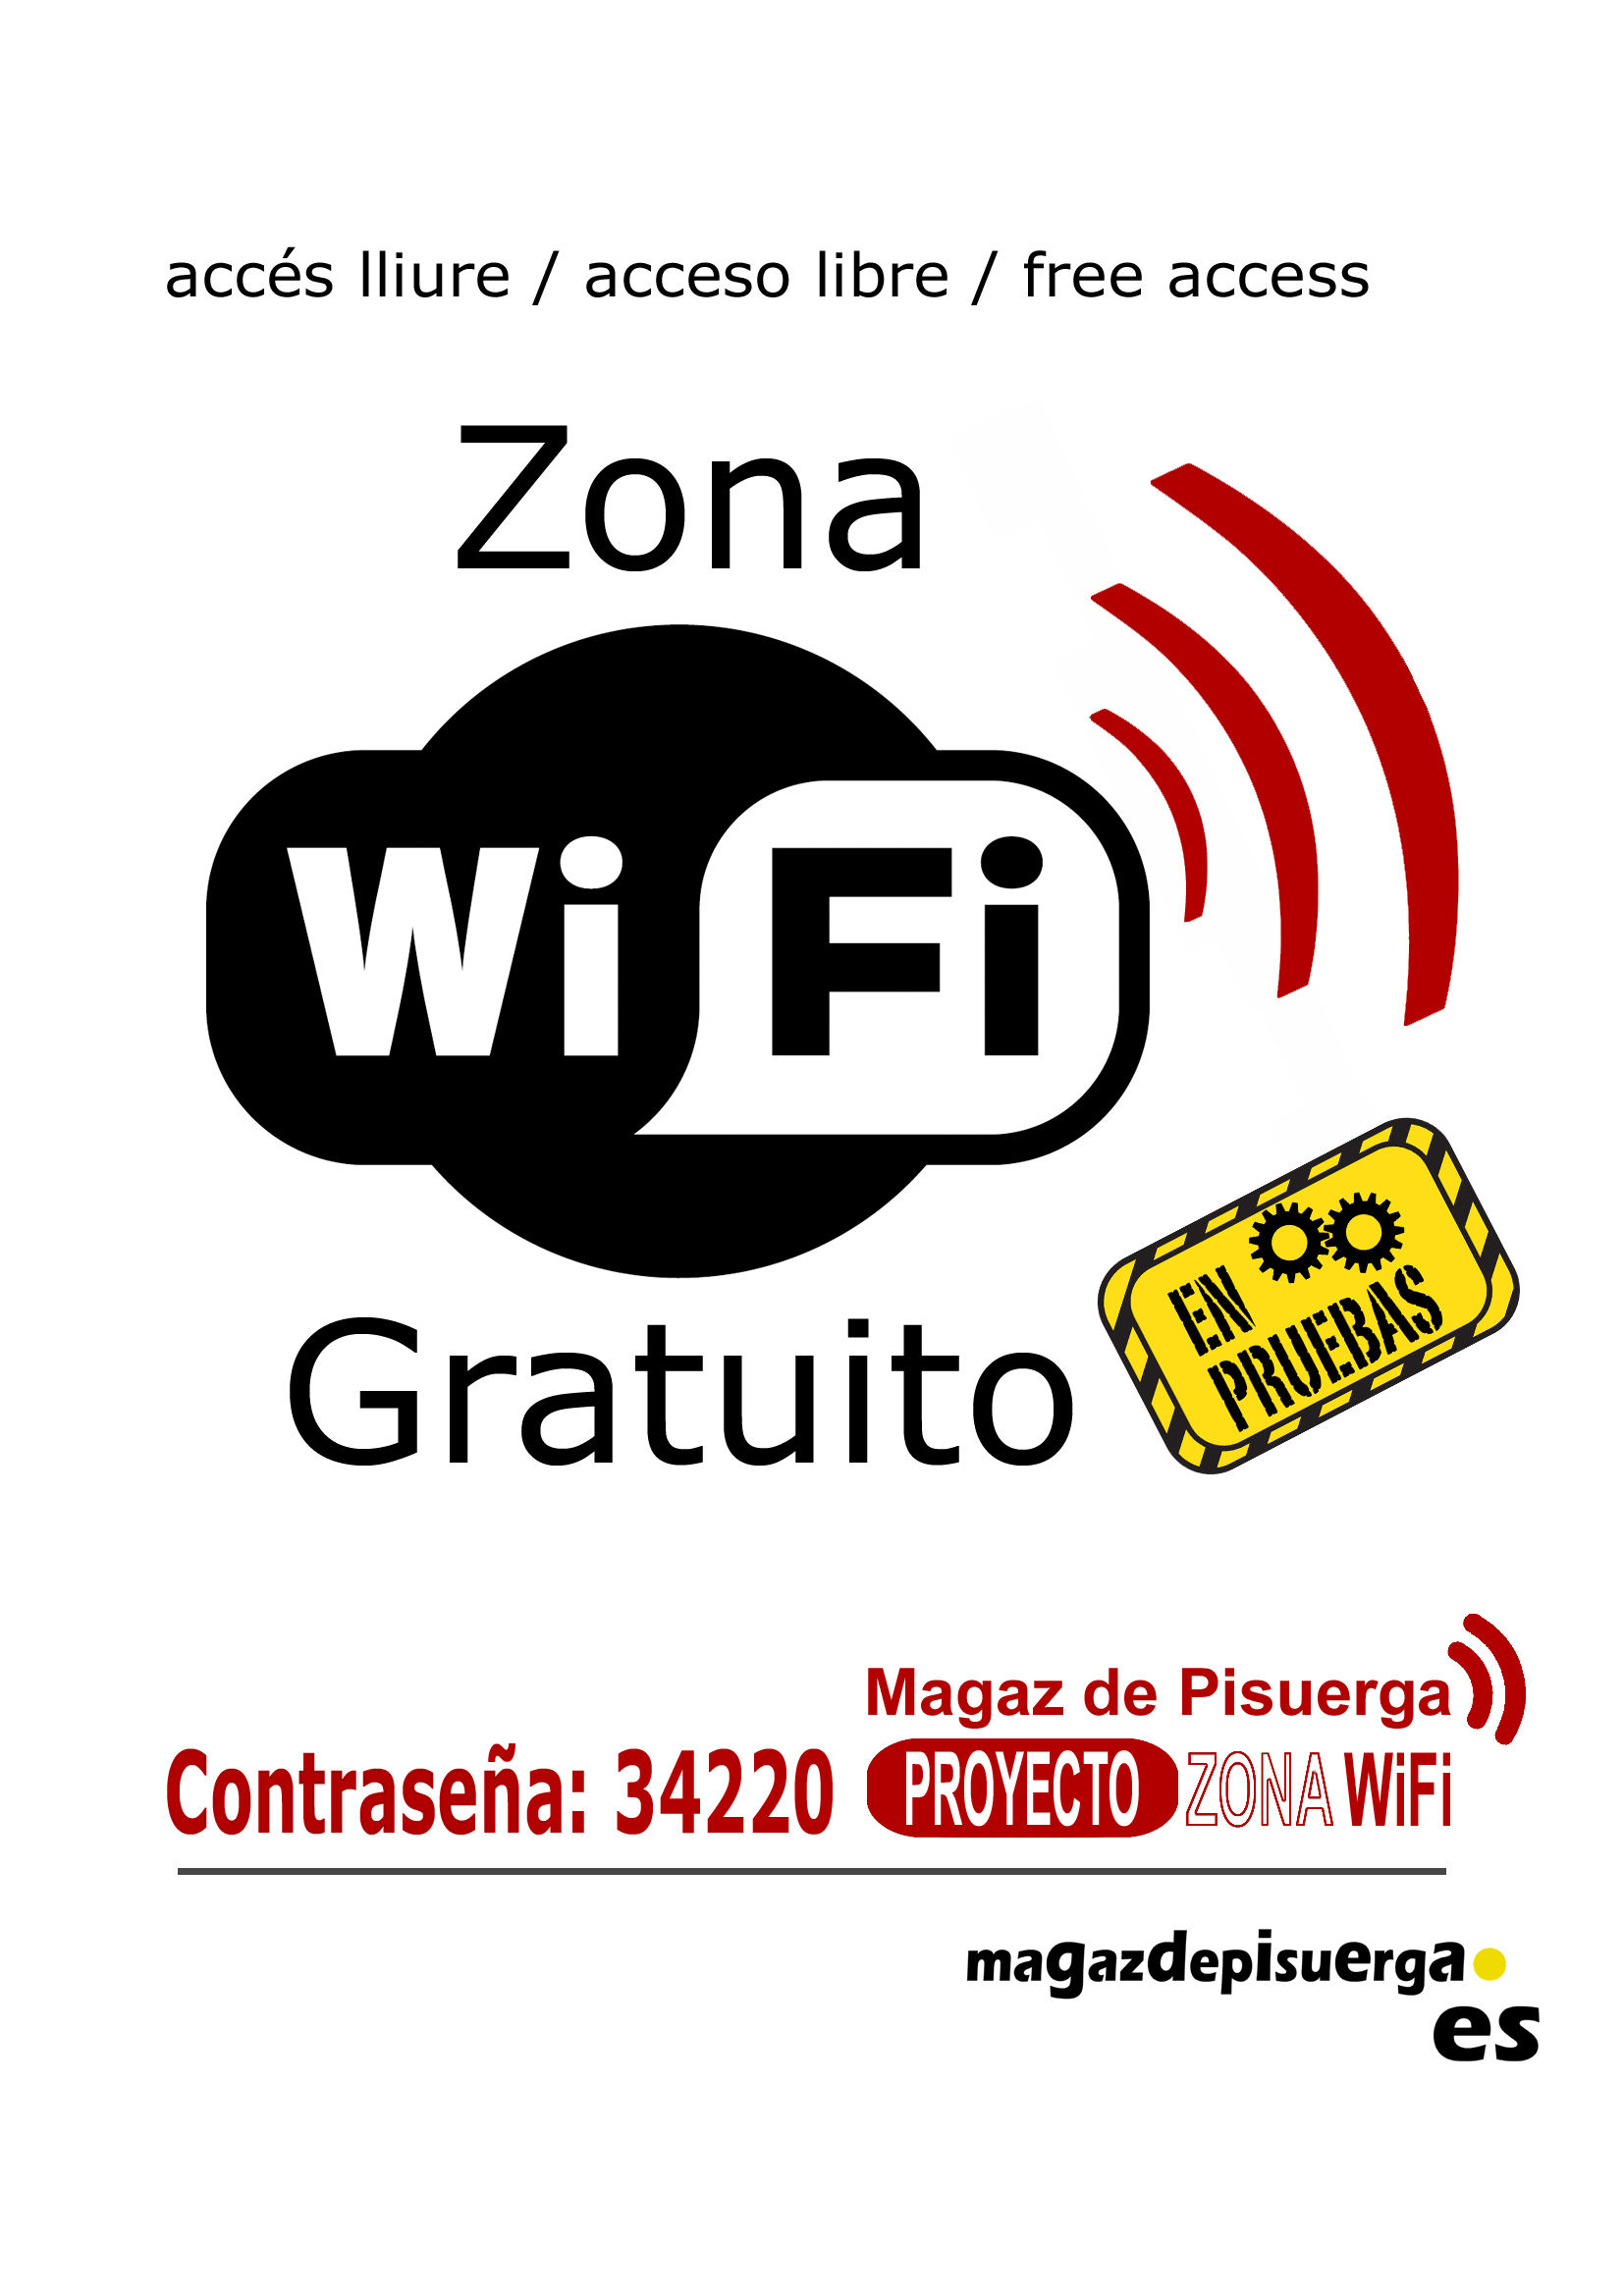 Proyecto Zona WiFi en el municipio